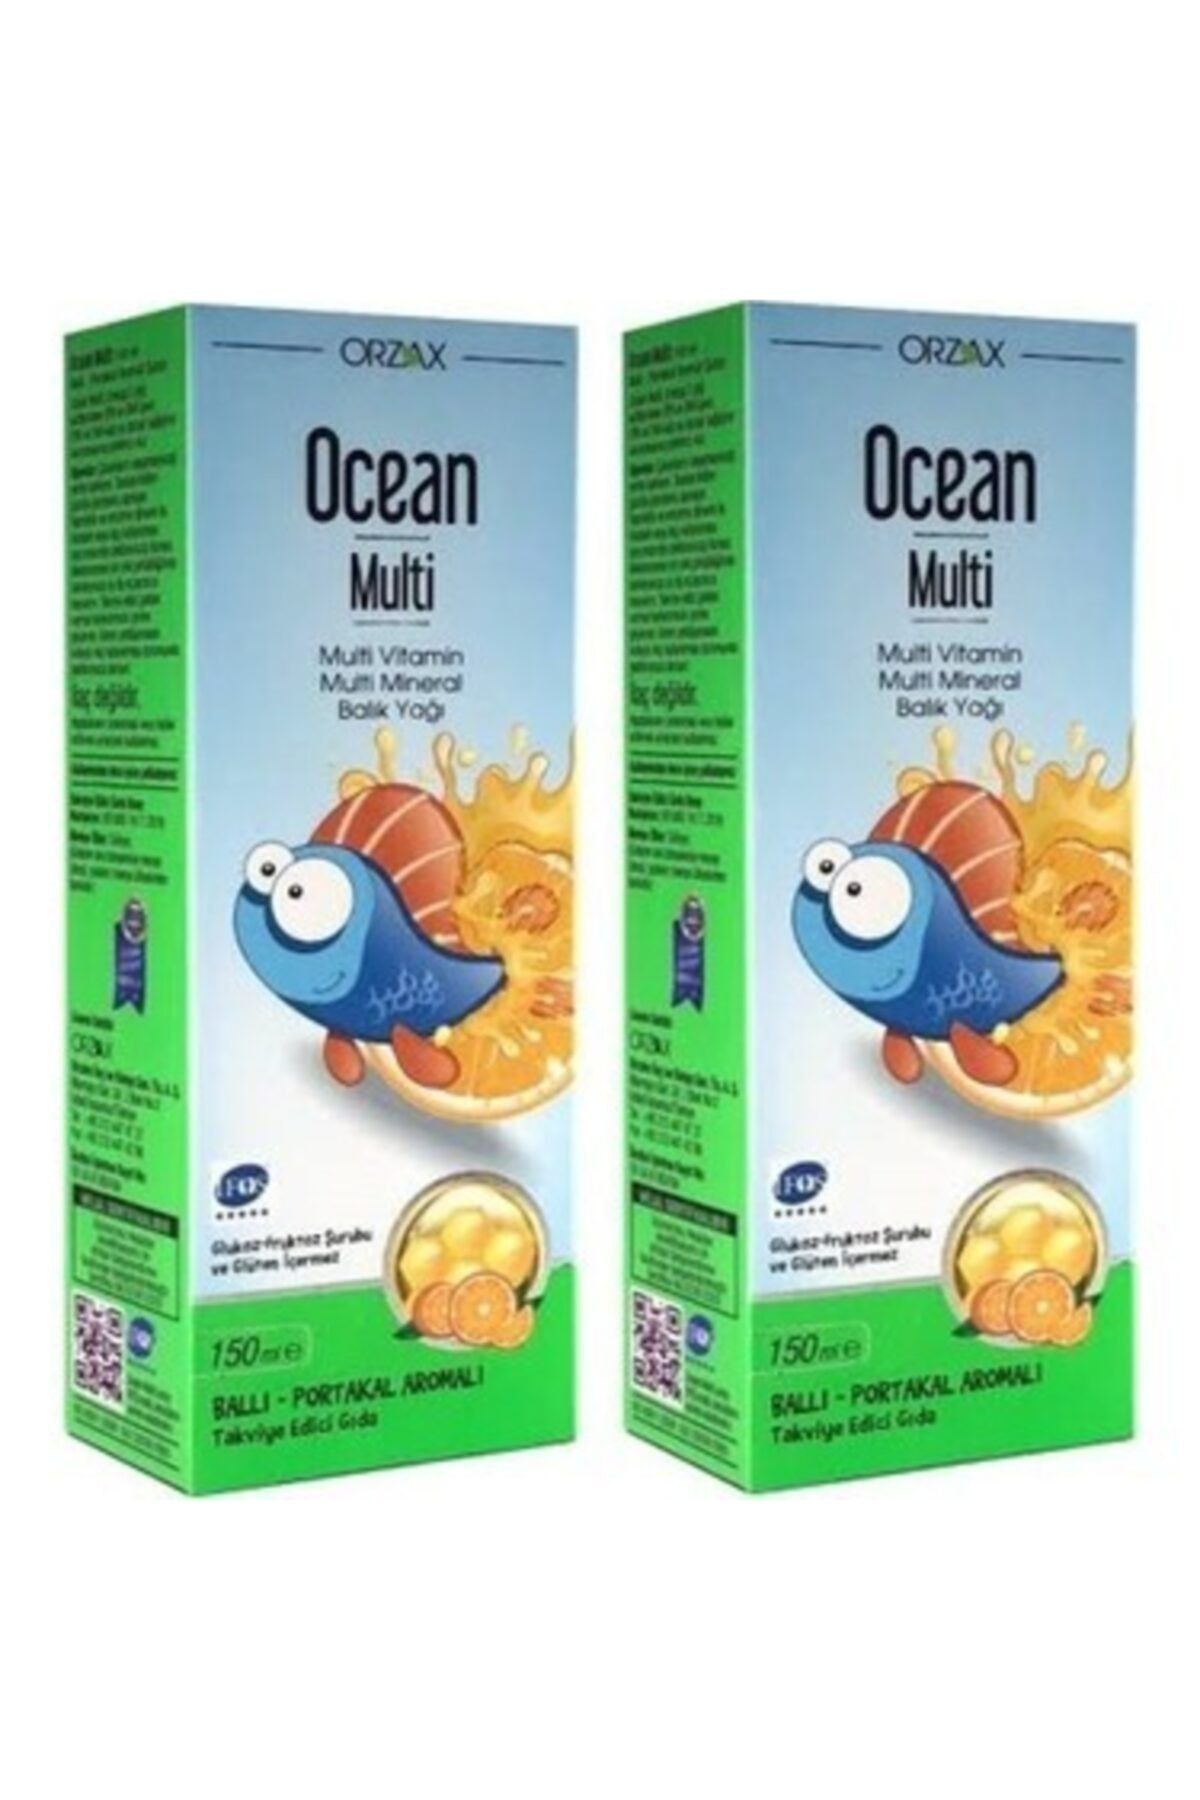 Ocean Multi Şurup Ballı Portakal Konsantreli Kral Şakir 150 ml 2 Adet